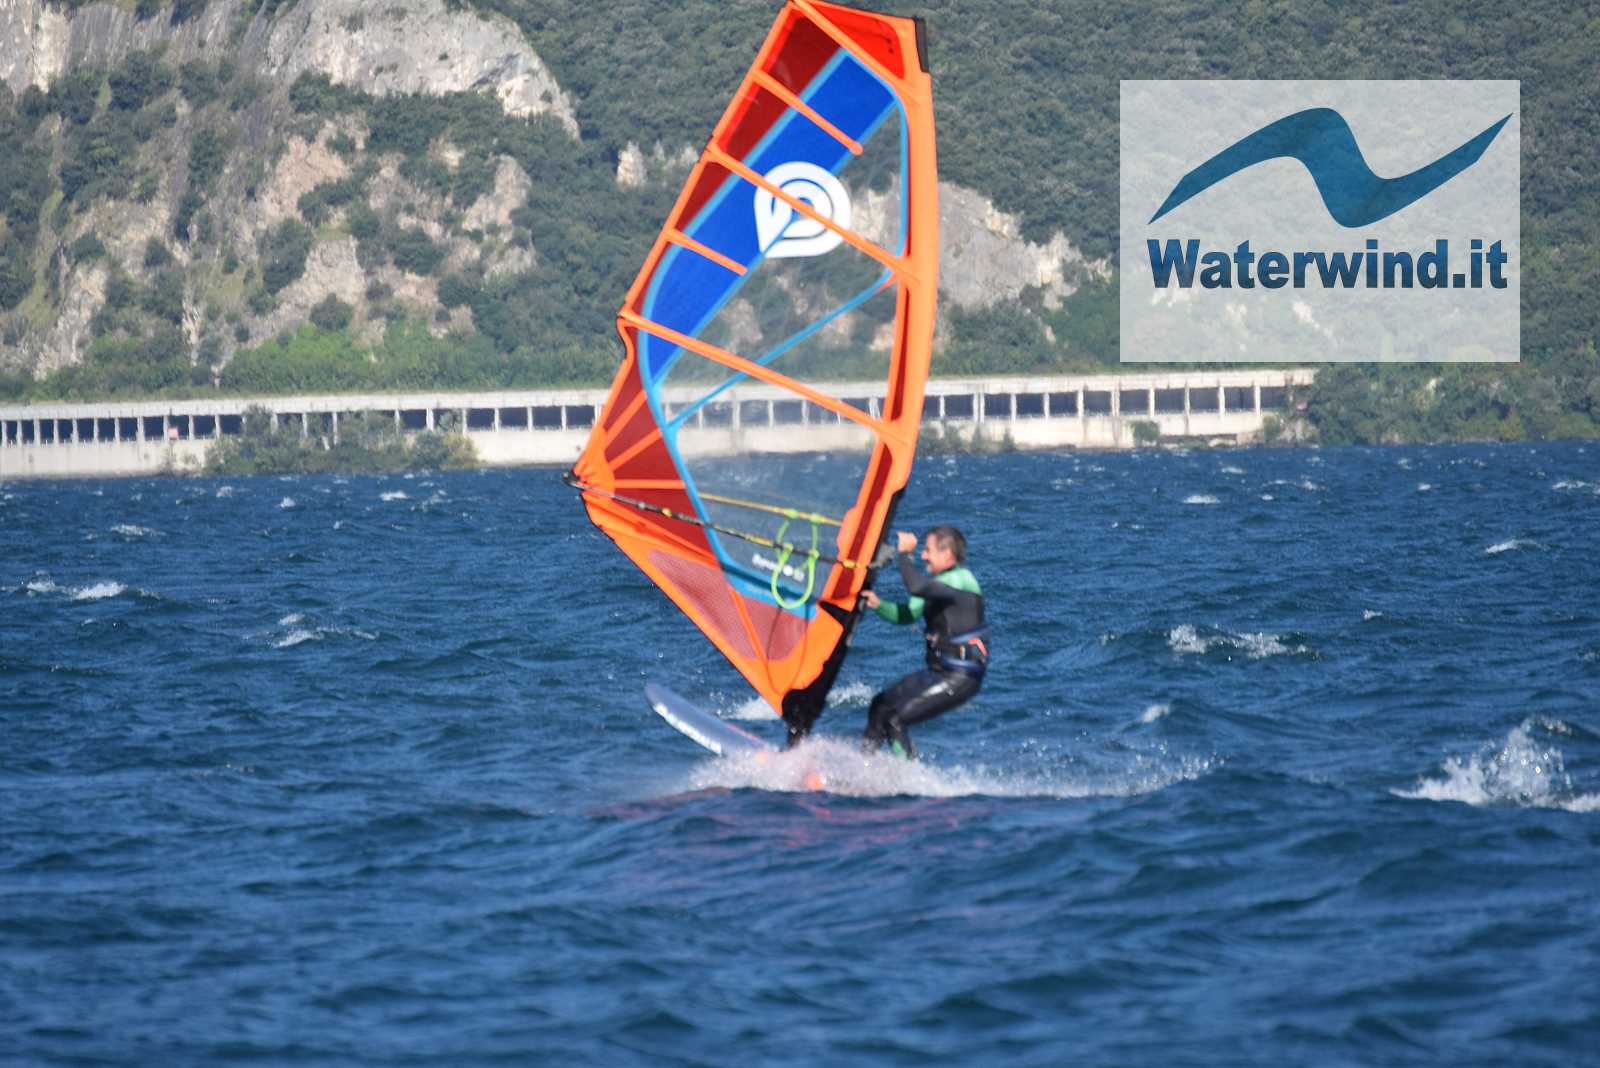 Malcesine, Lake Garda, 15 August 2020